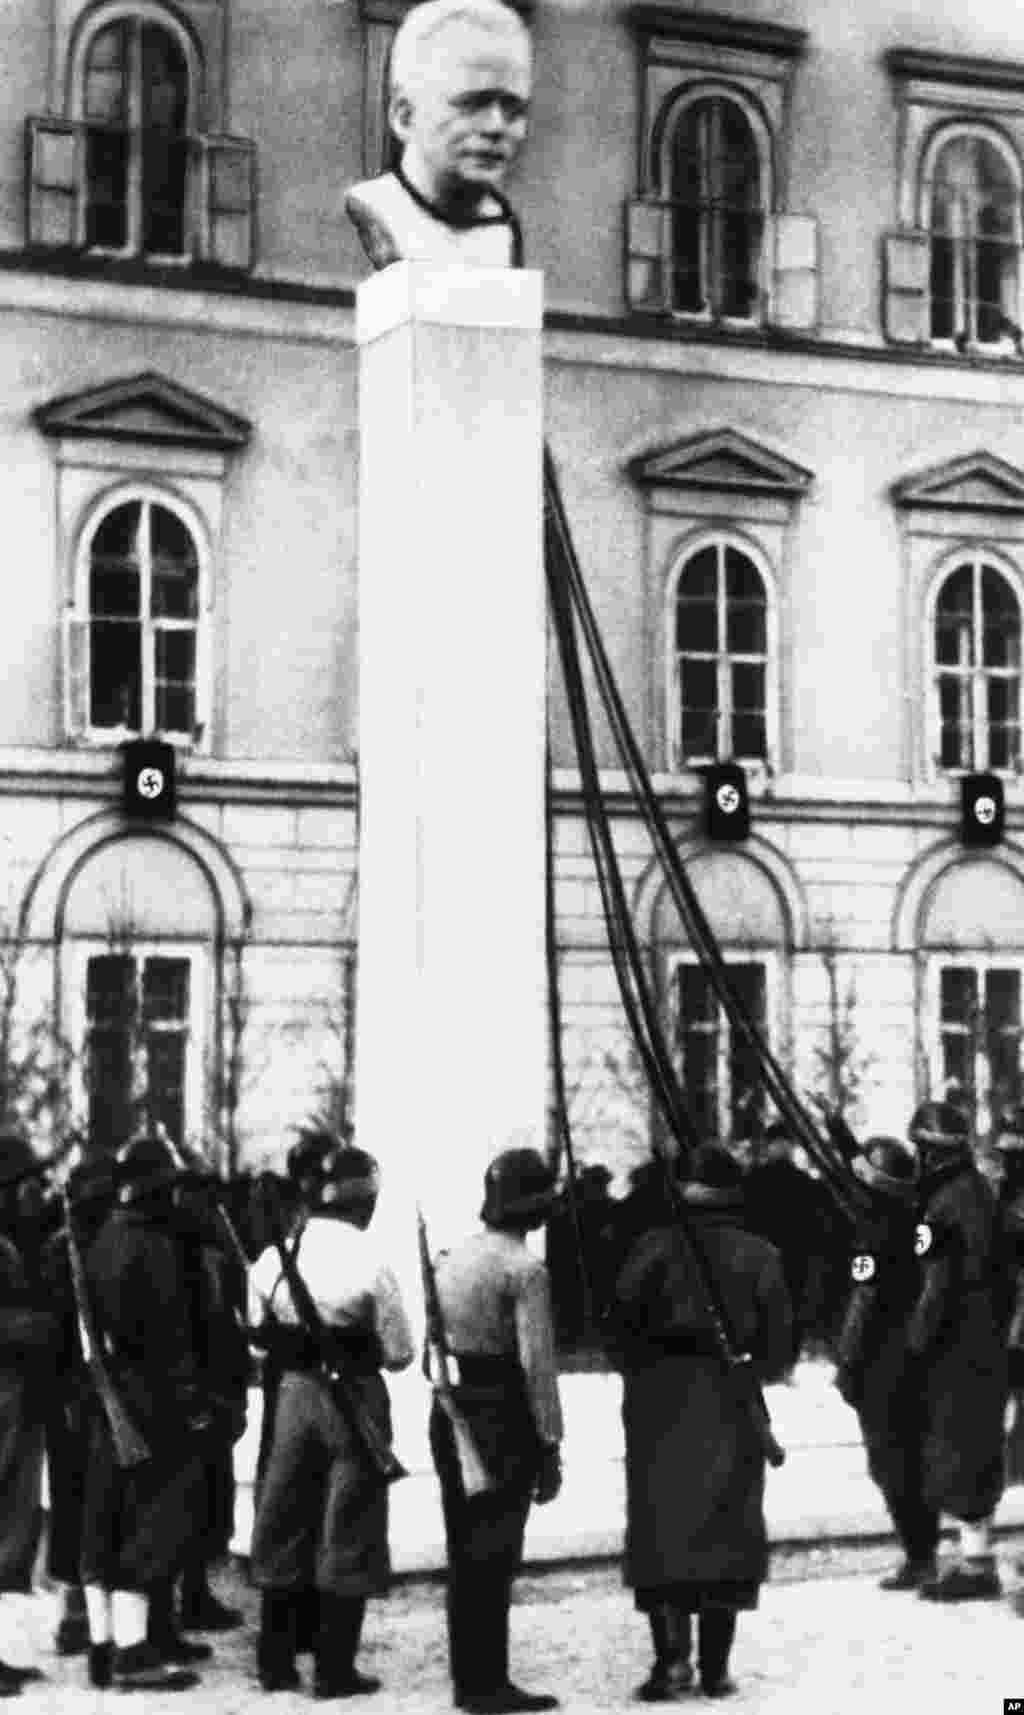 Нацистки войници в очакване на заповед за сваляне на бюста на австрийския канцлер Енгелберт Долфус. Това се случва след анексията на Австрия от нацистка Германия през 1938 г.